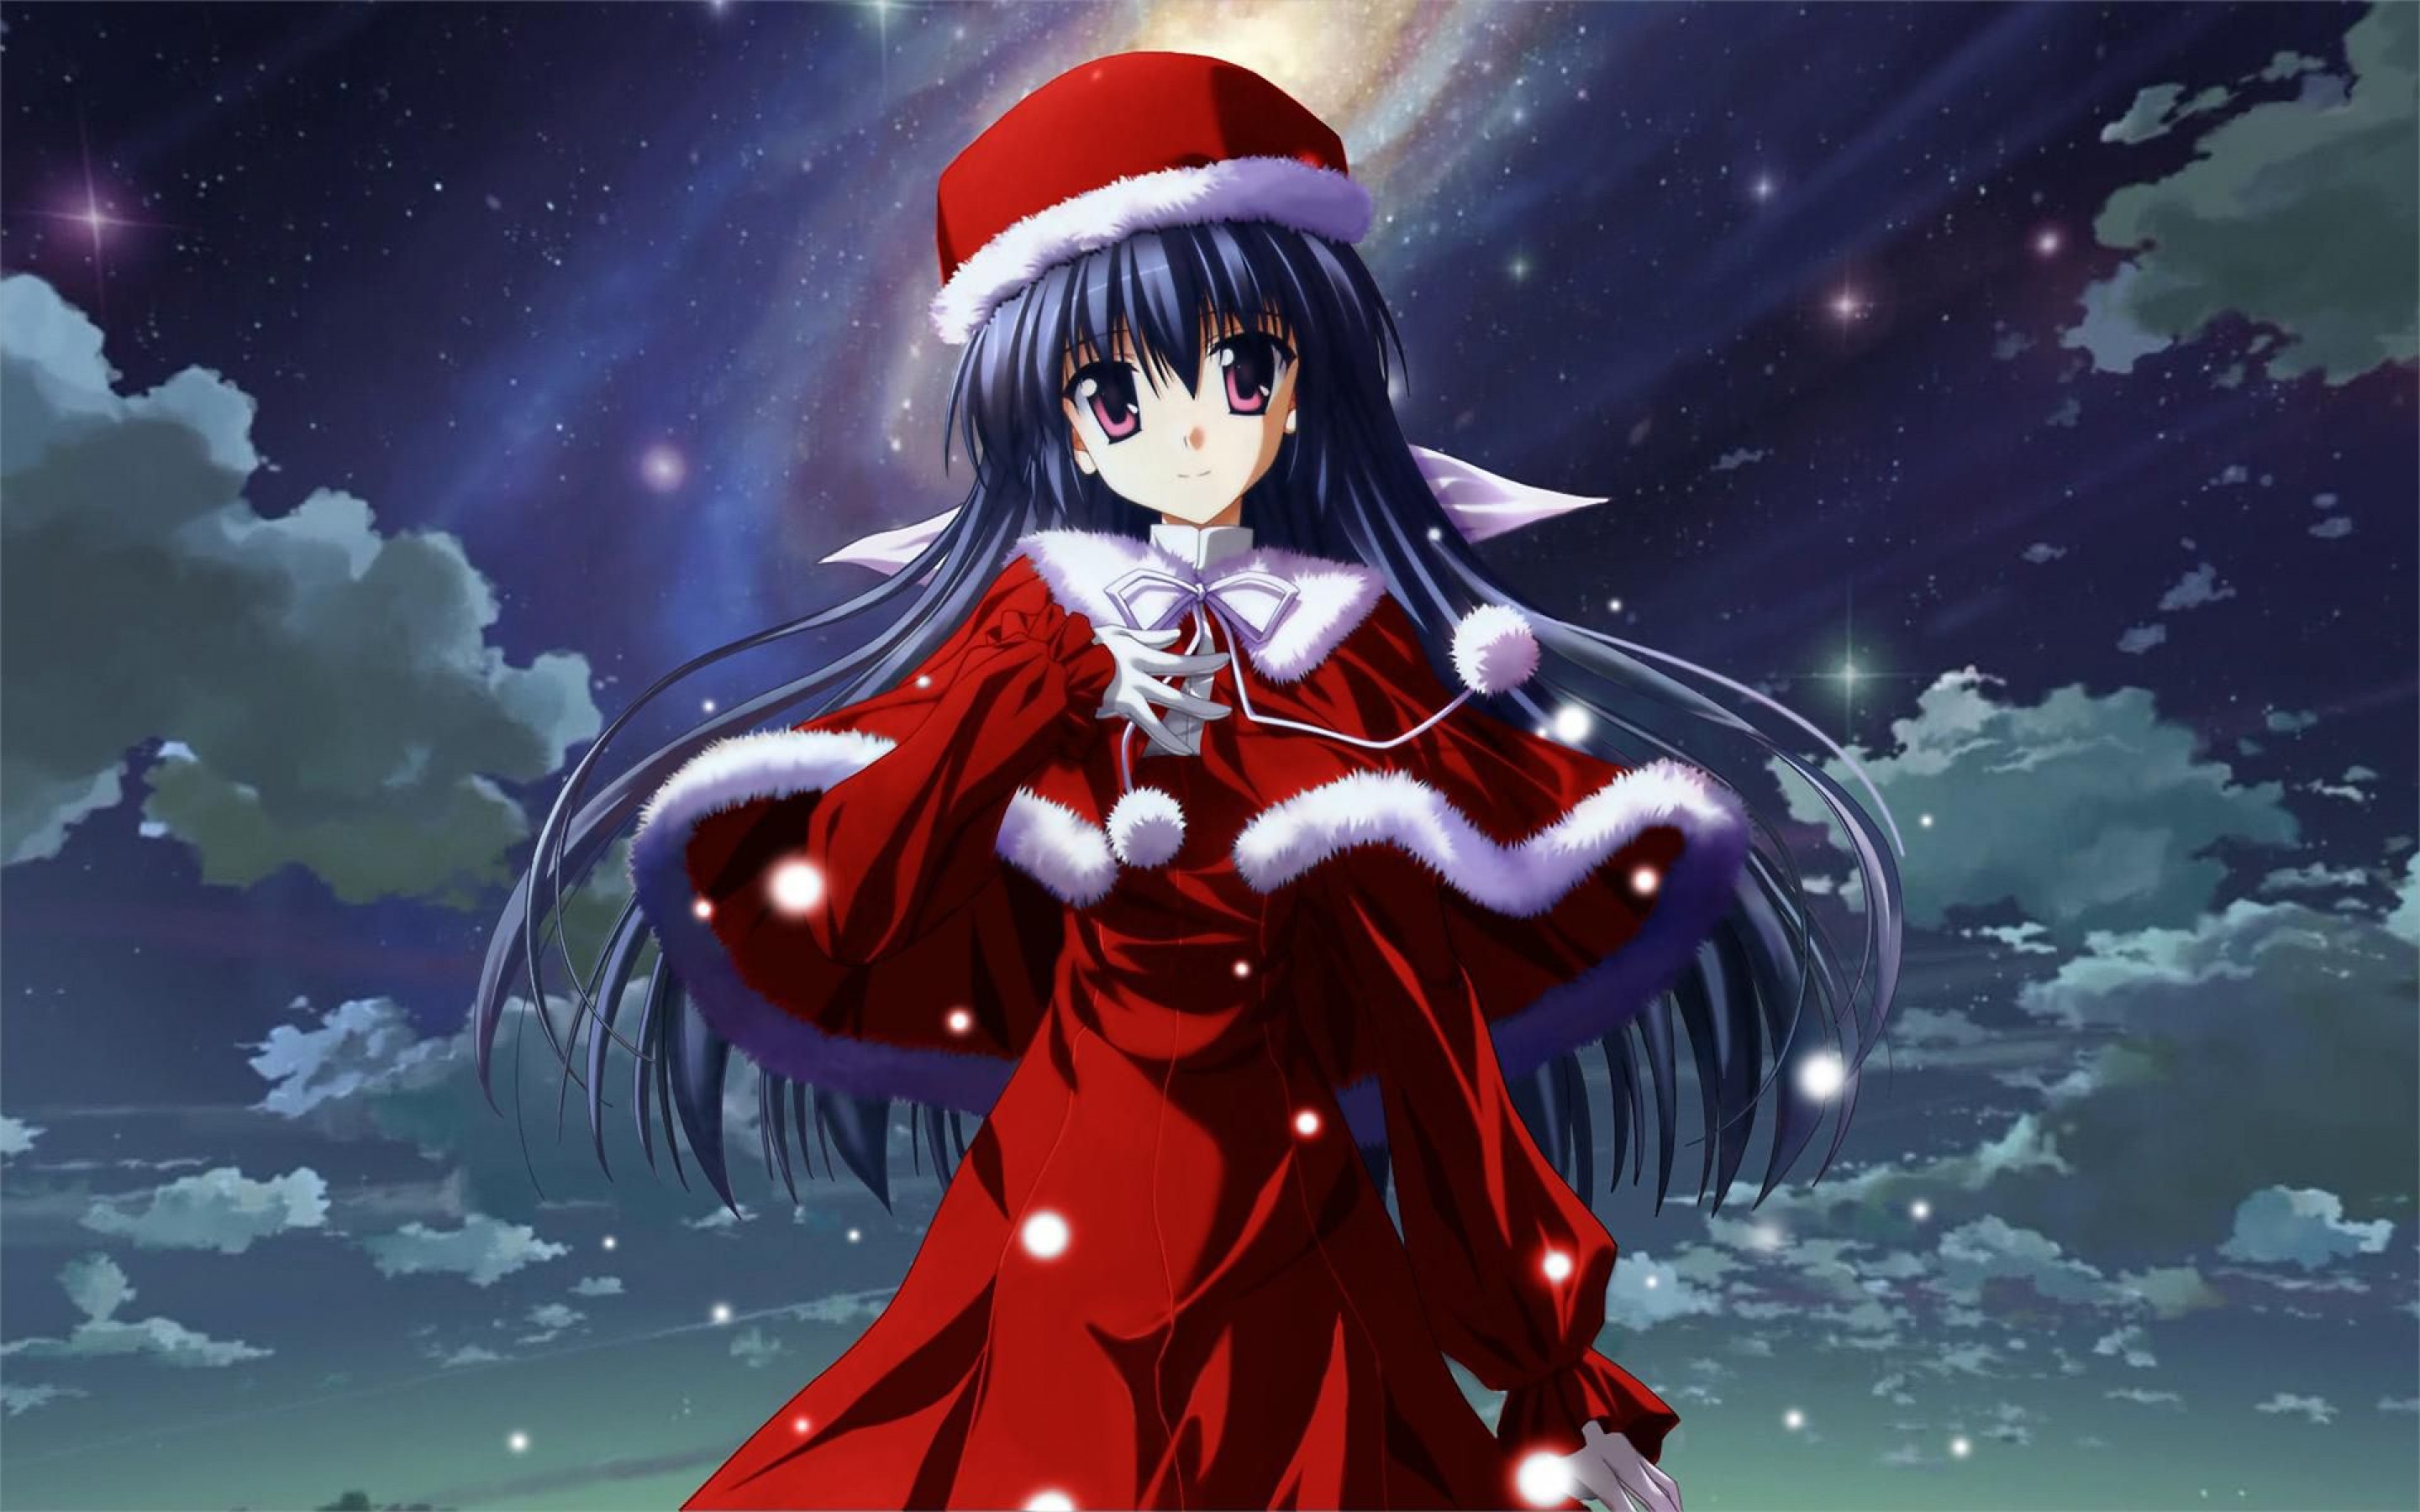 [44+] Anime Christmas Wallpaper HD on WallpaperSafari